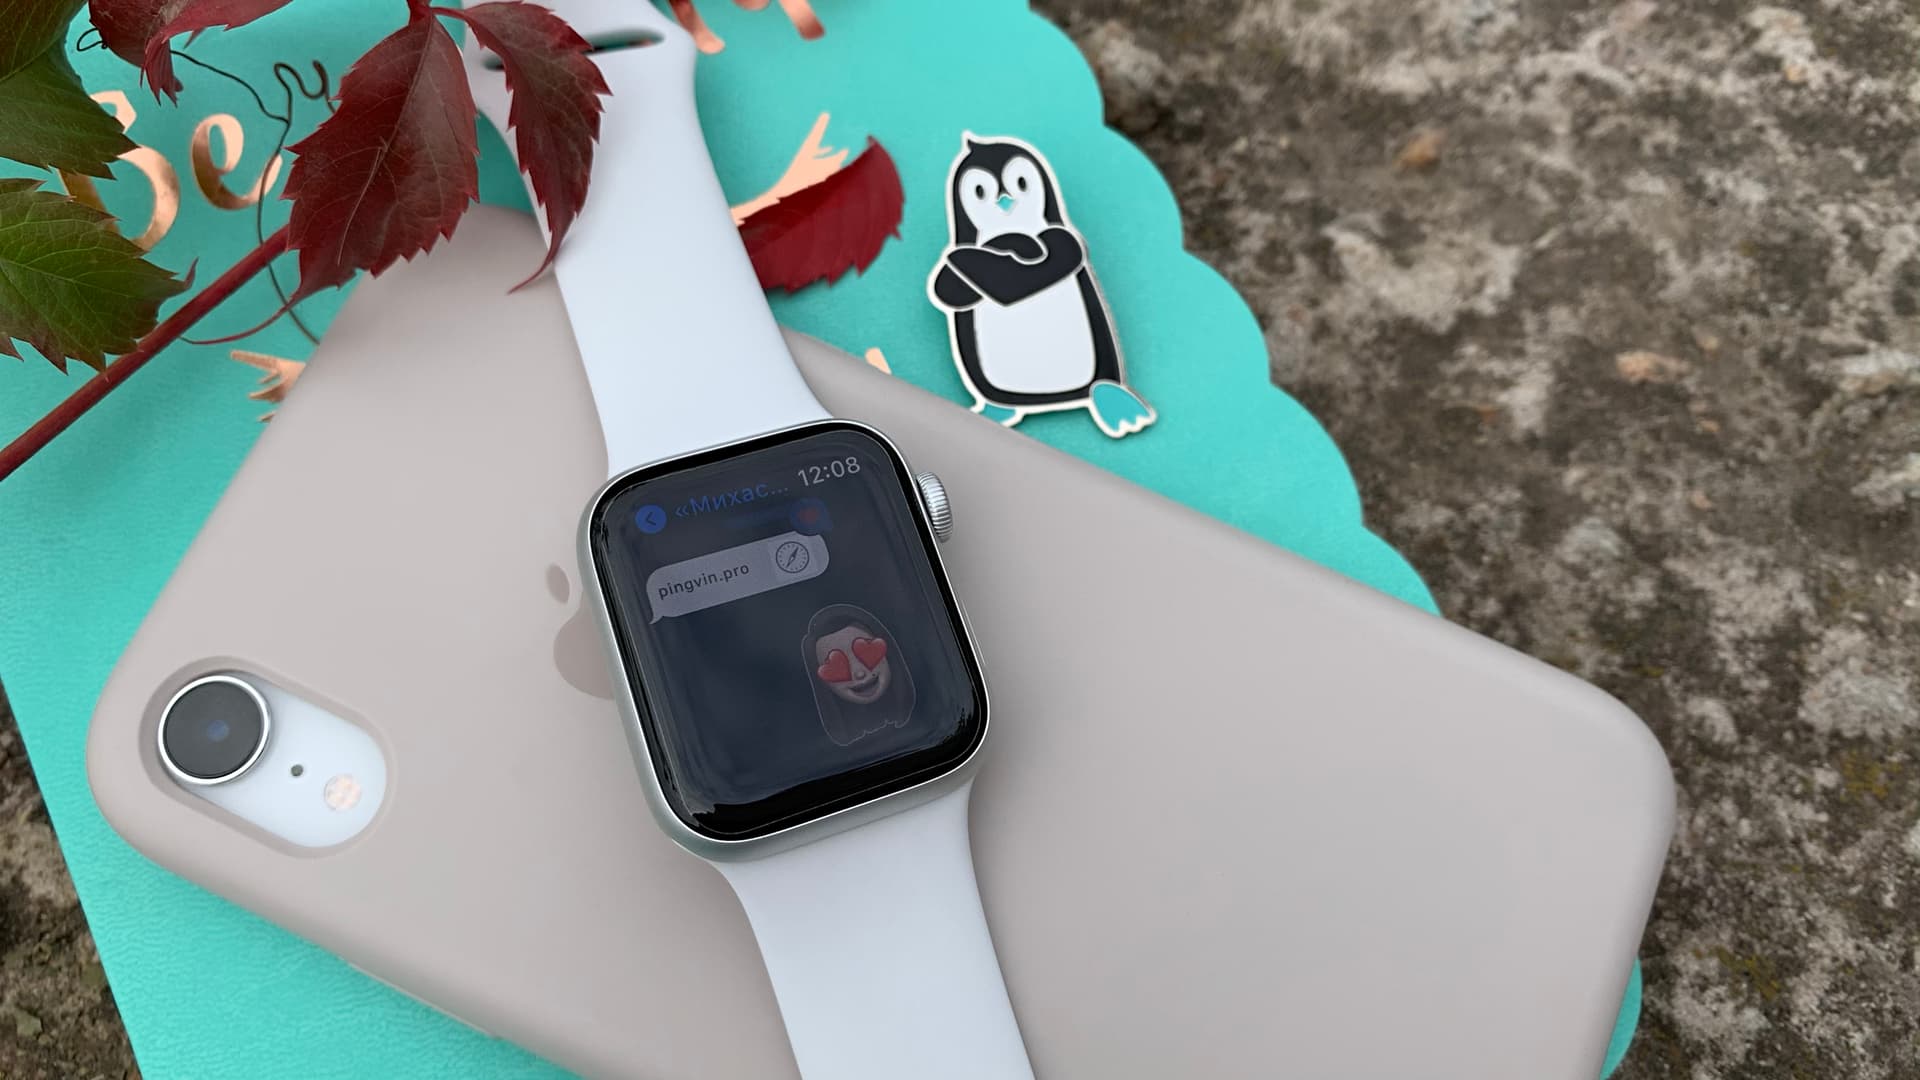 Apple Watch SE / watchOS 7.1